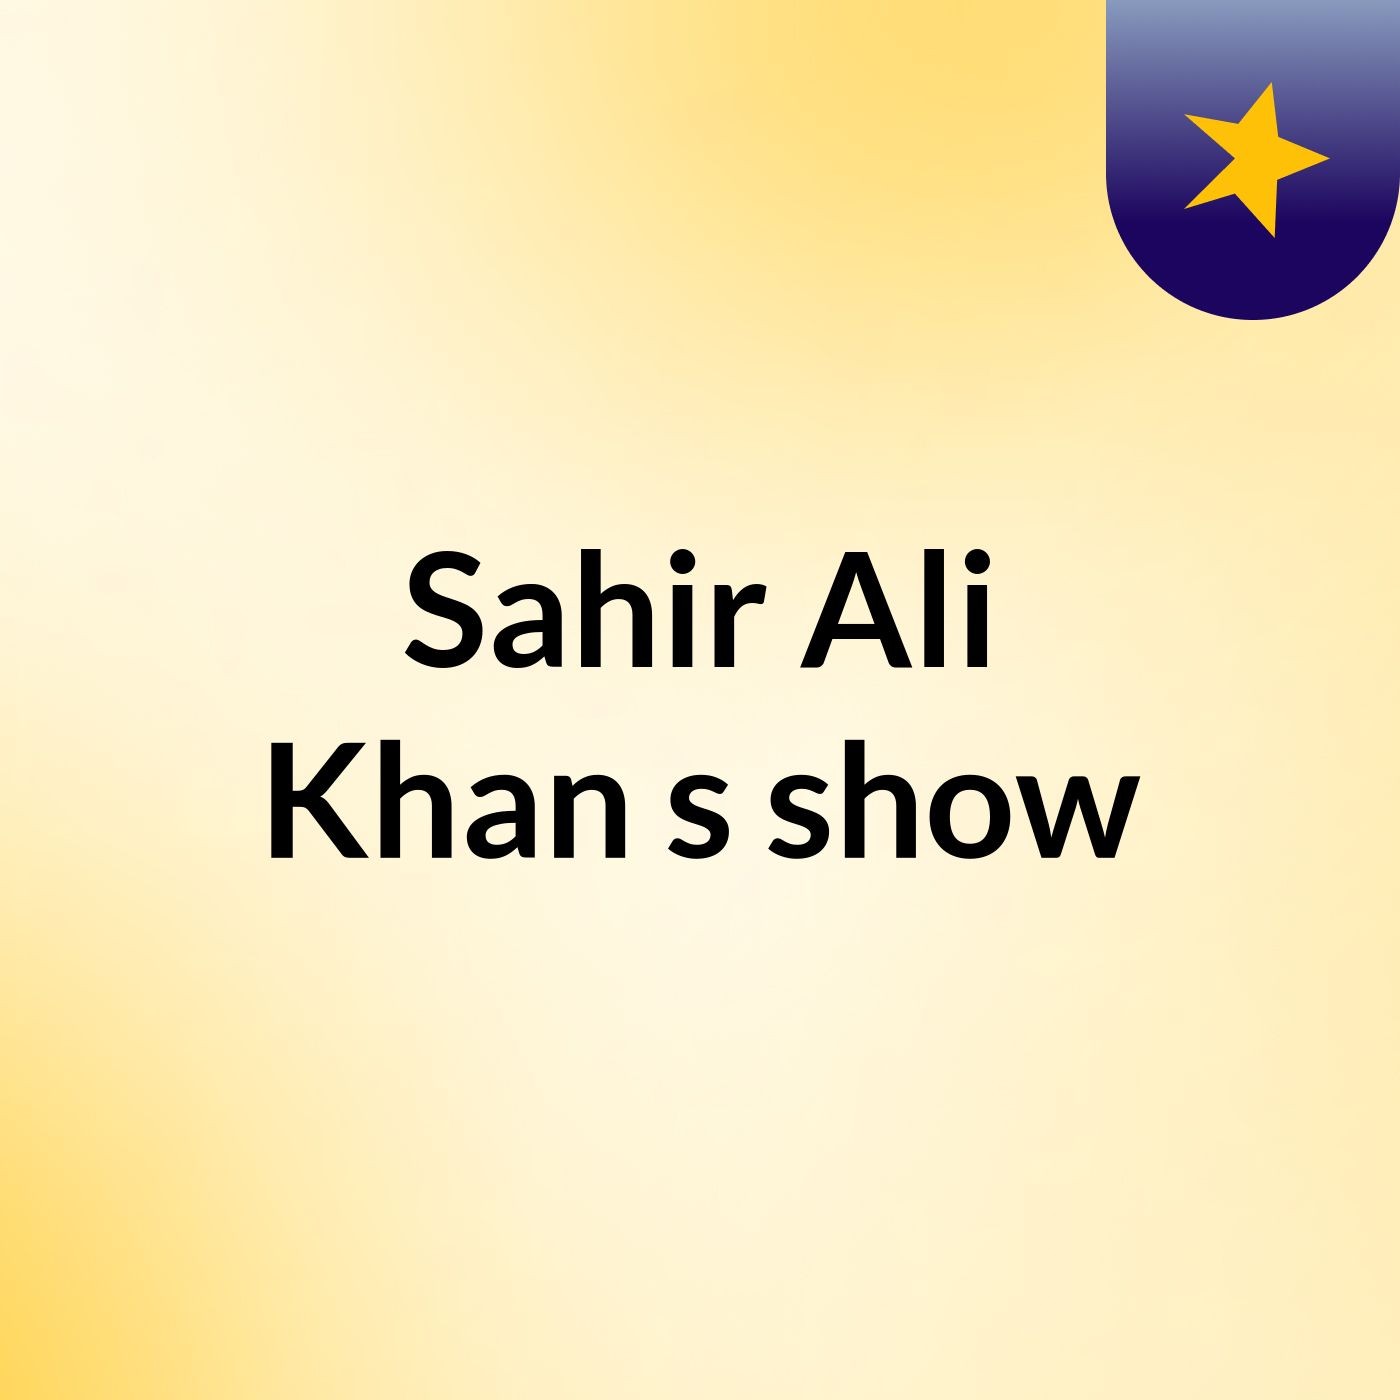 Sahir Ali Khan's show